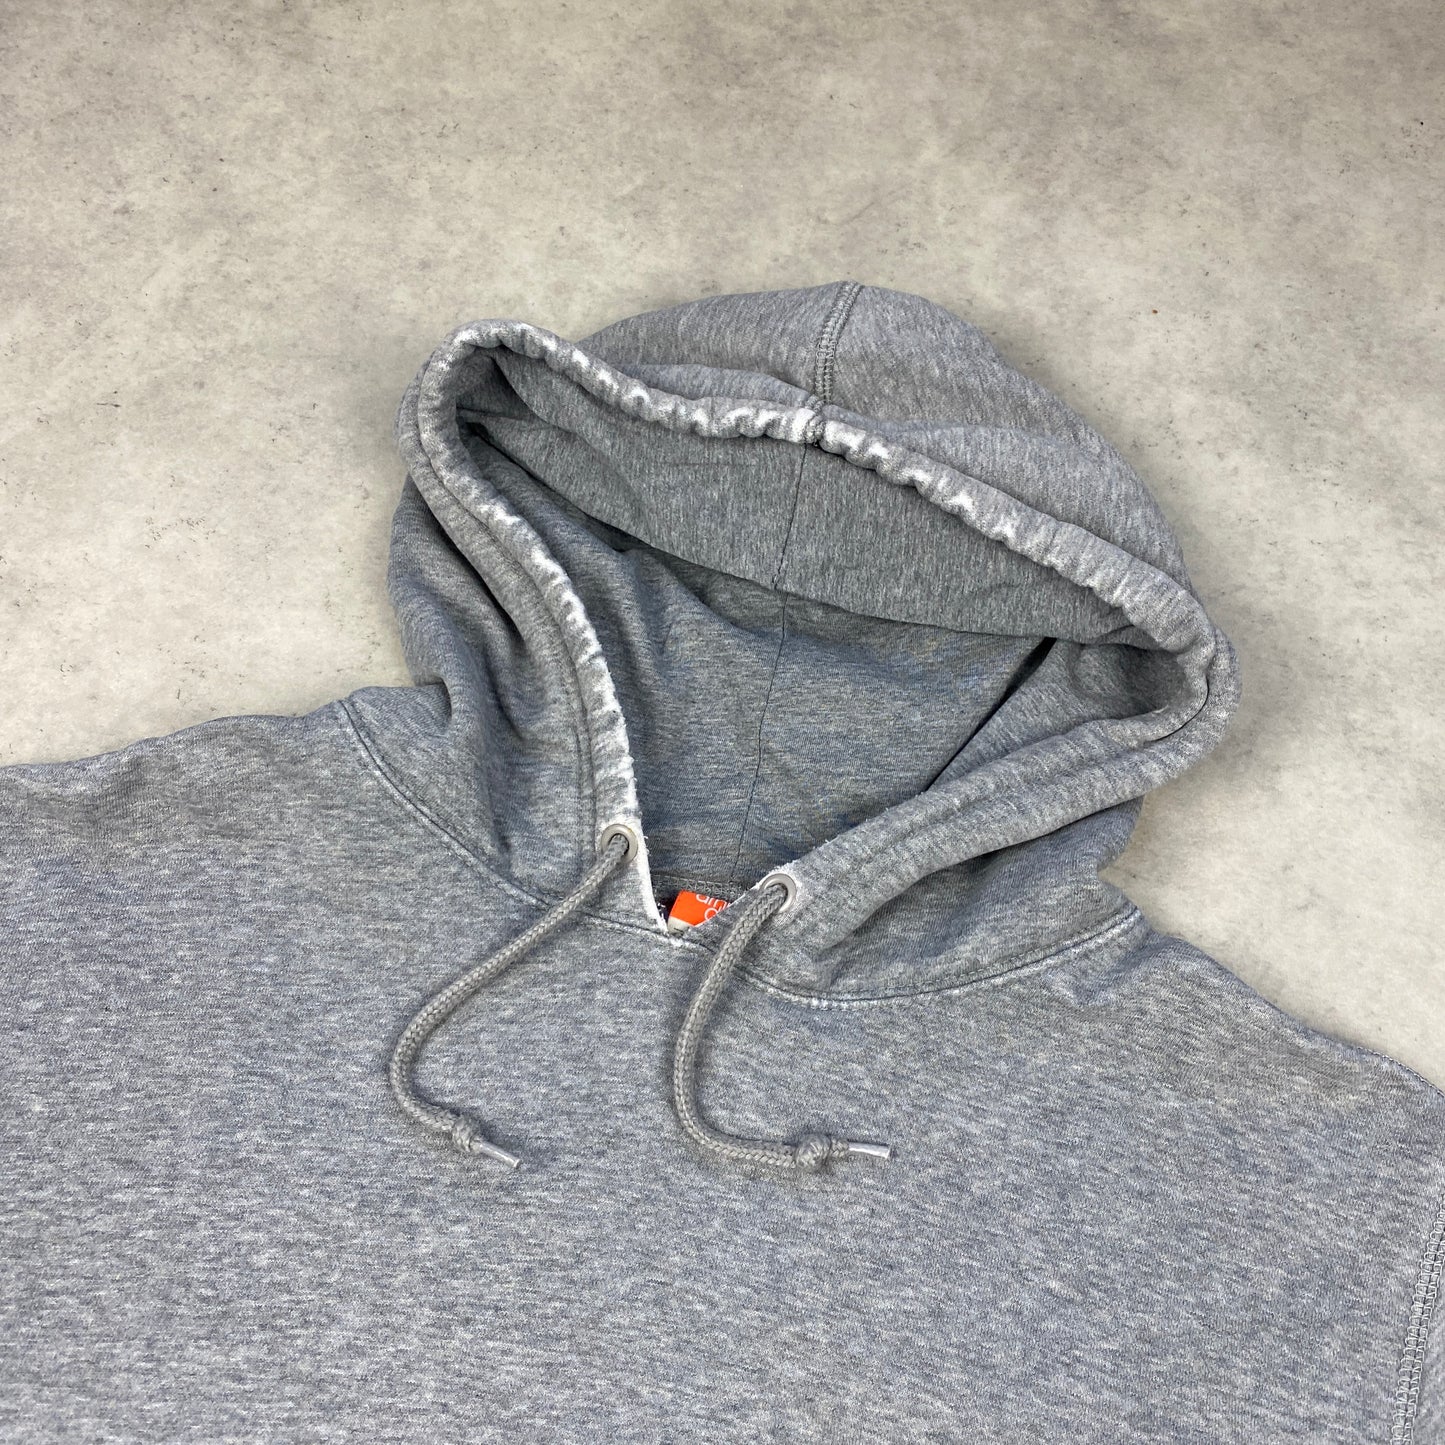 Nike distressed hoodie (L)